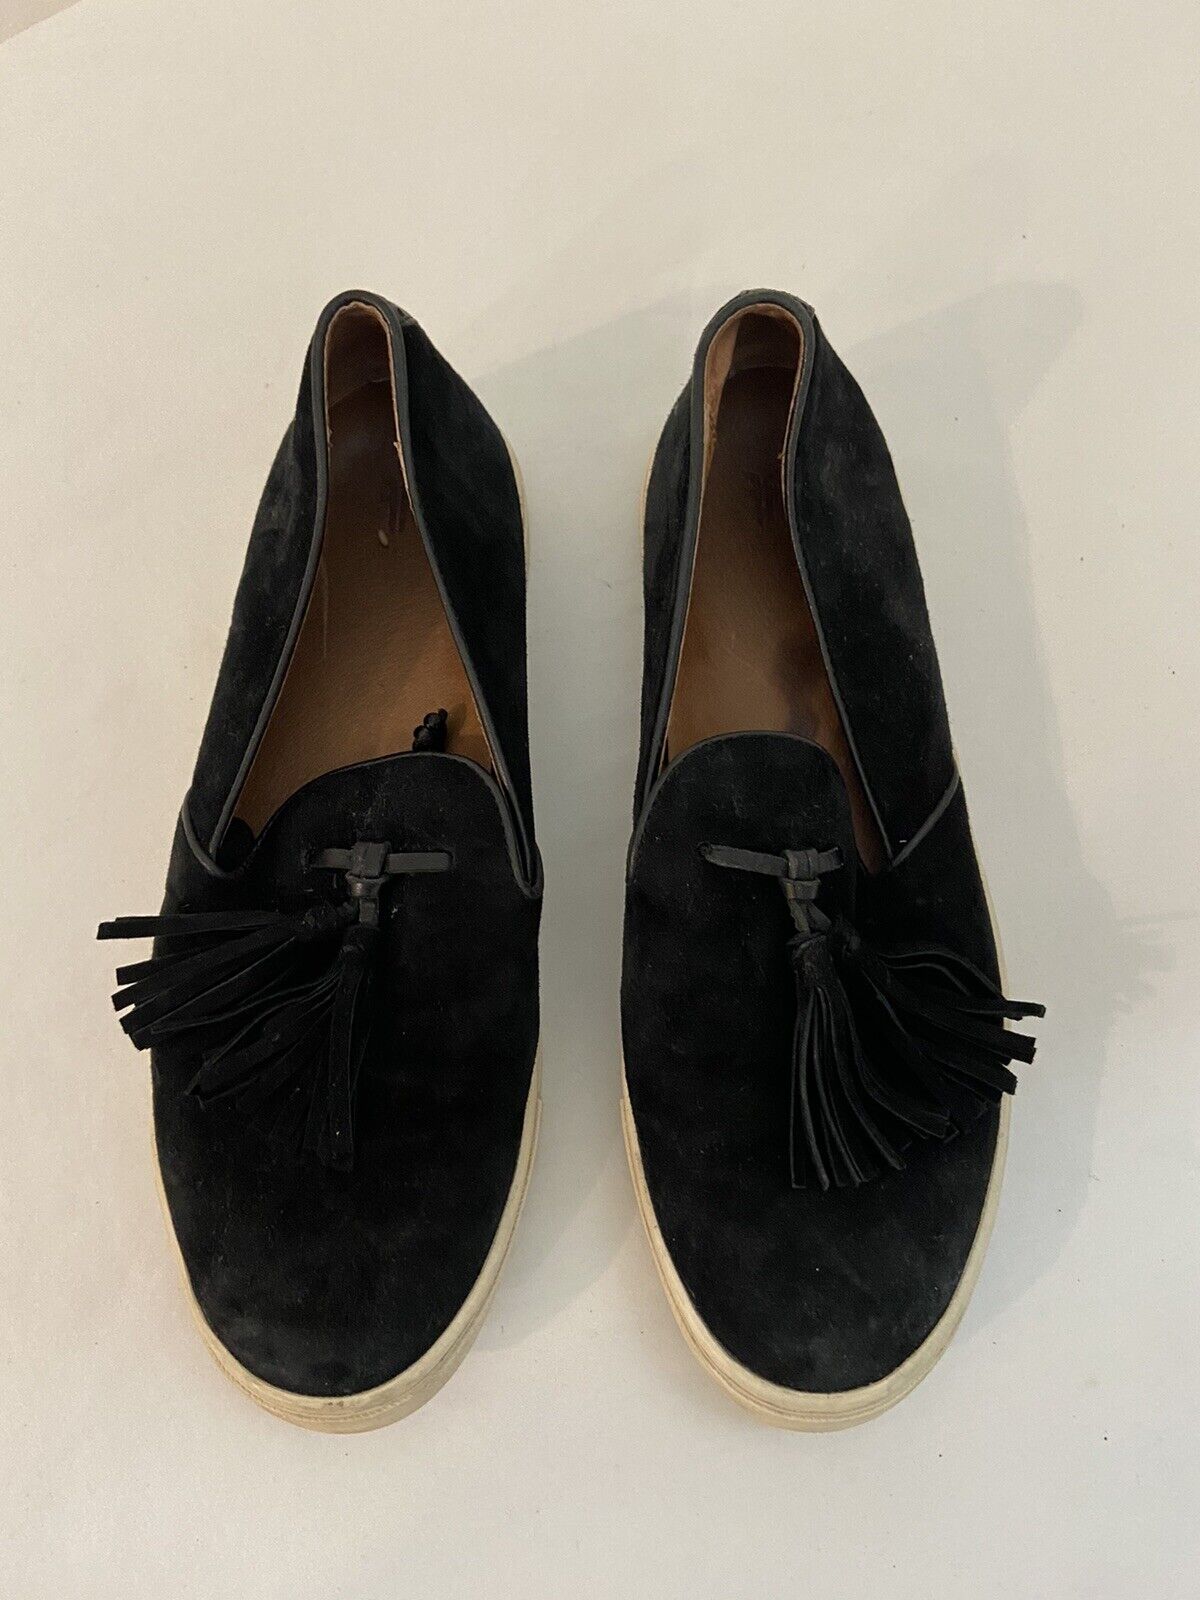 Frye Gemma Black Suede Tassel Slip-on Loafers Shoe Women Size 7.5